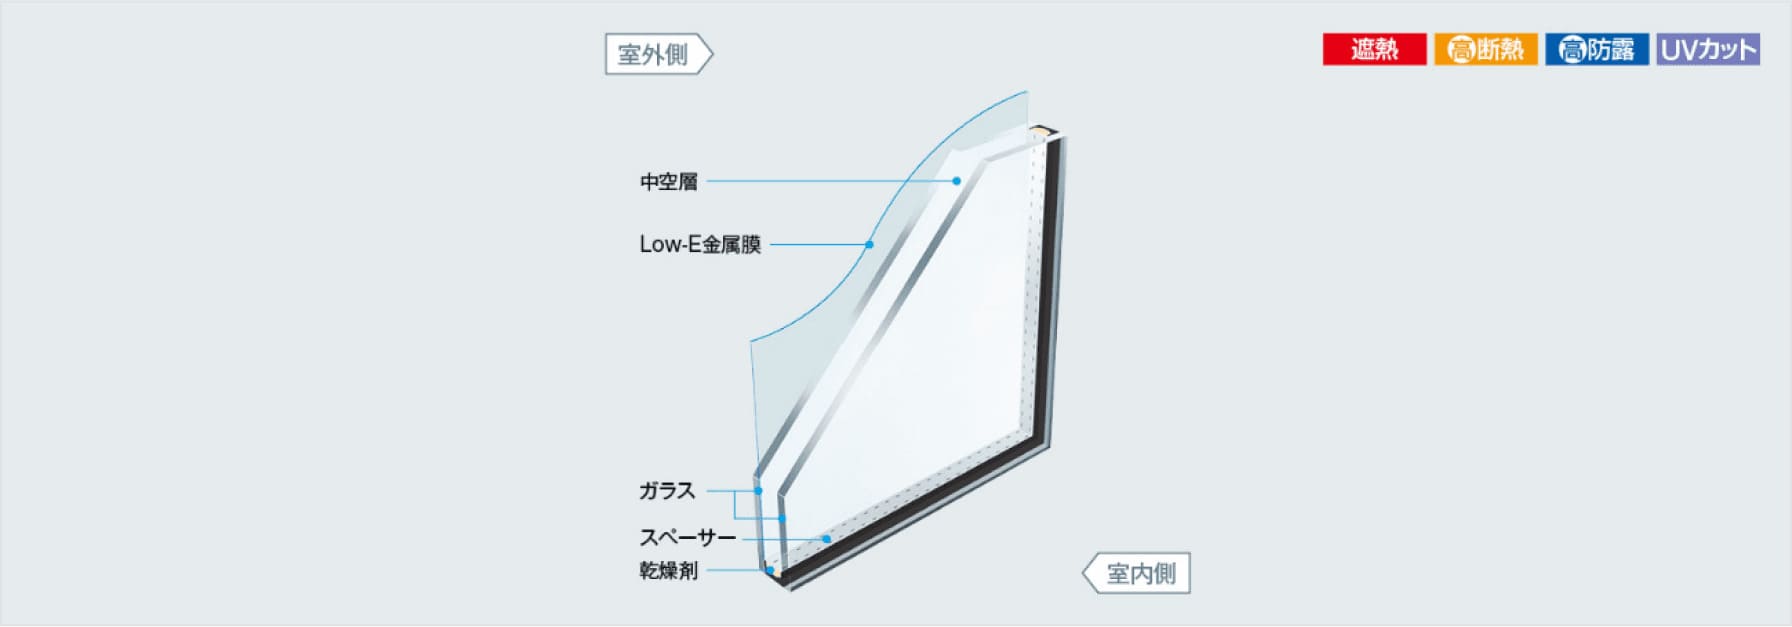 【断熱・日焼け防止】Low-E複層ガラス